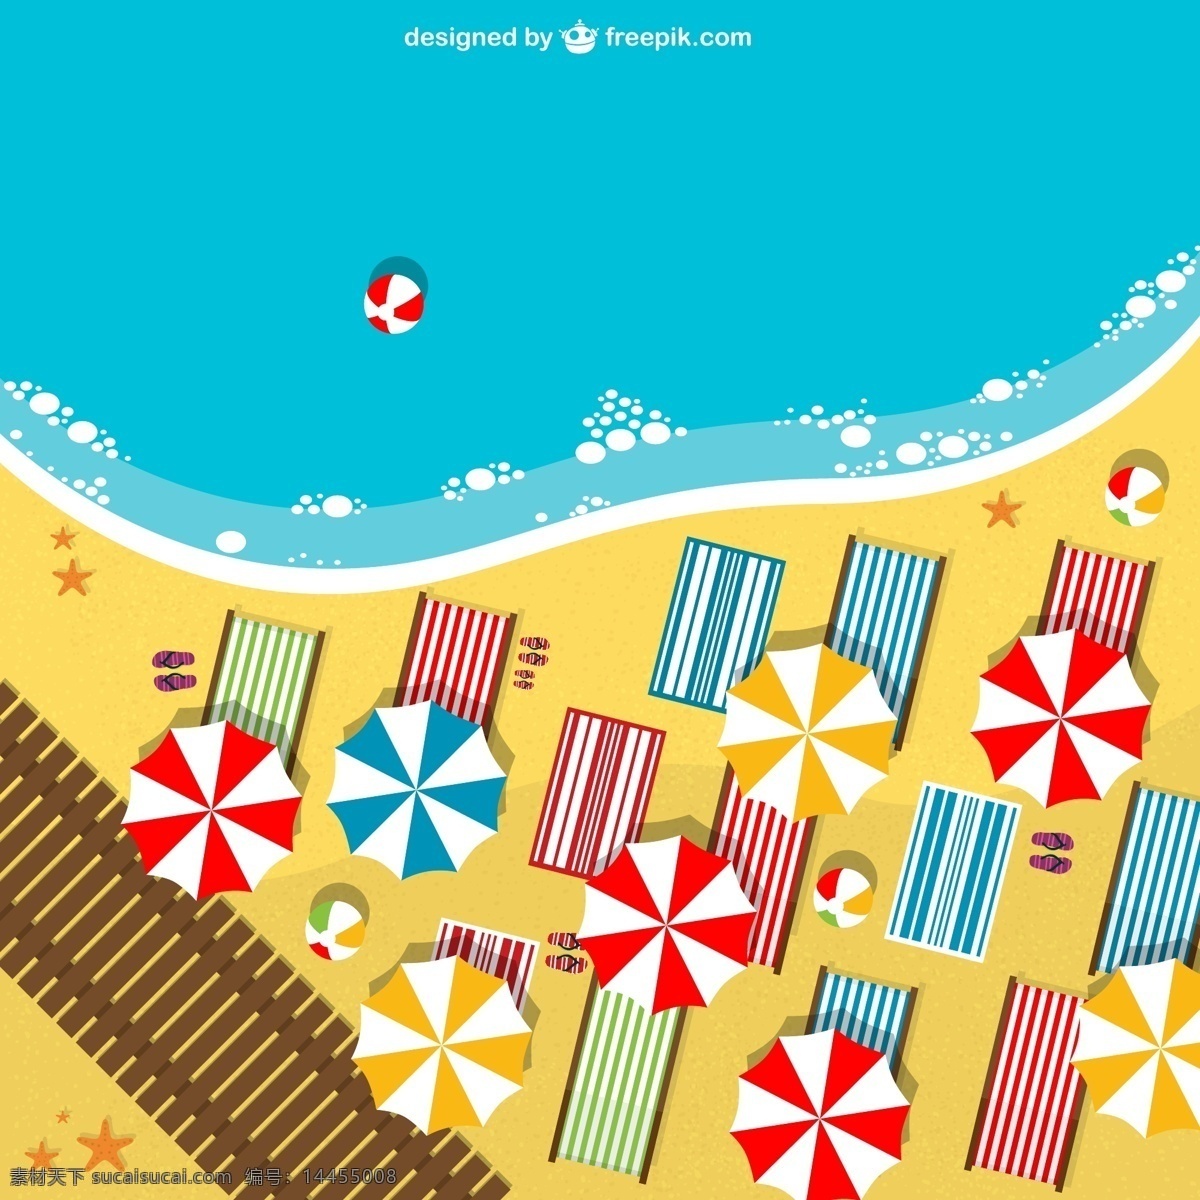 夏季 沙滩 俯视图 大海 遮阳伞 躺椅 海星 度假 沙滩拖鞋 矢量图 ai格式 青色 天蓝色